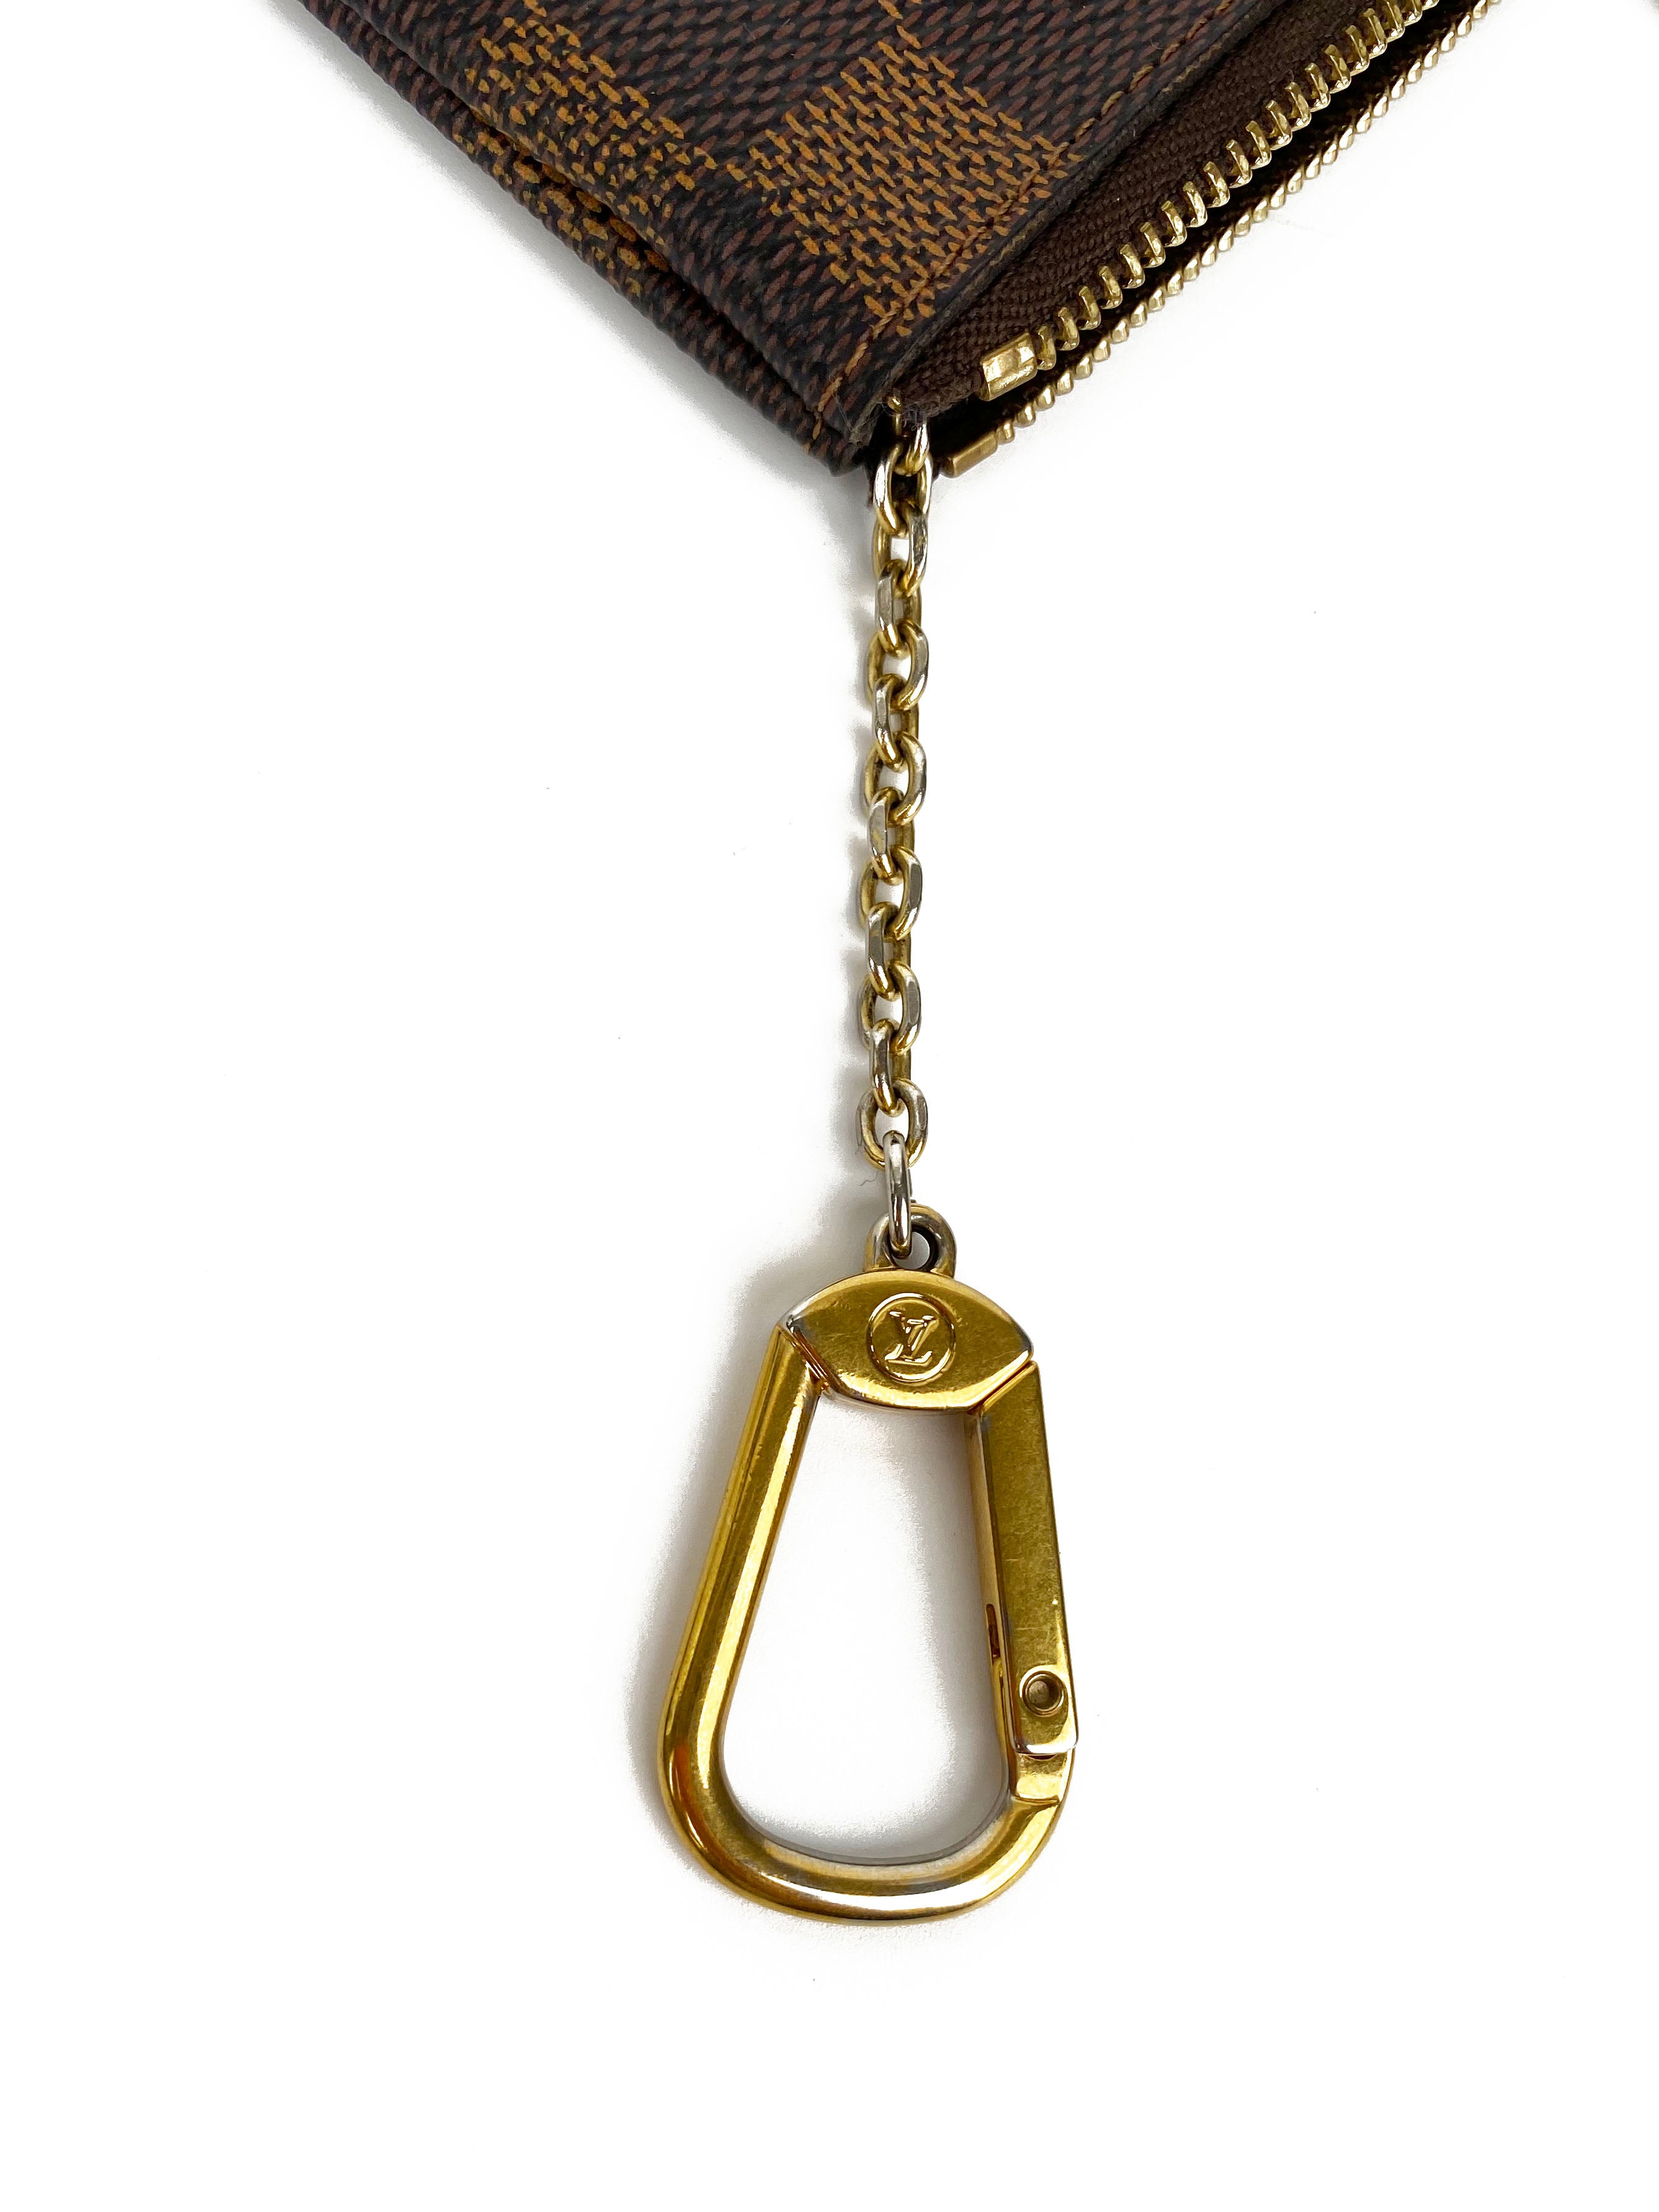 Louis Vuitton Damier Ebene Key Pouch – Votre Luxe